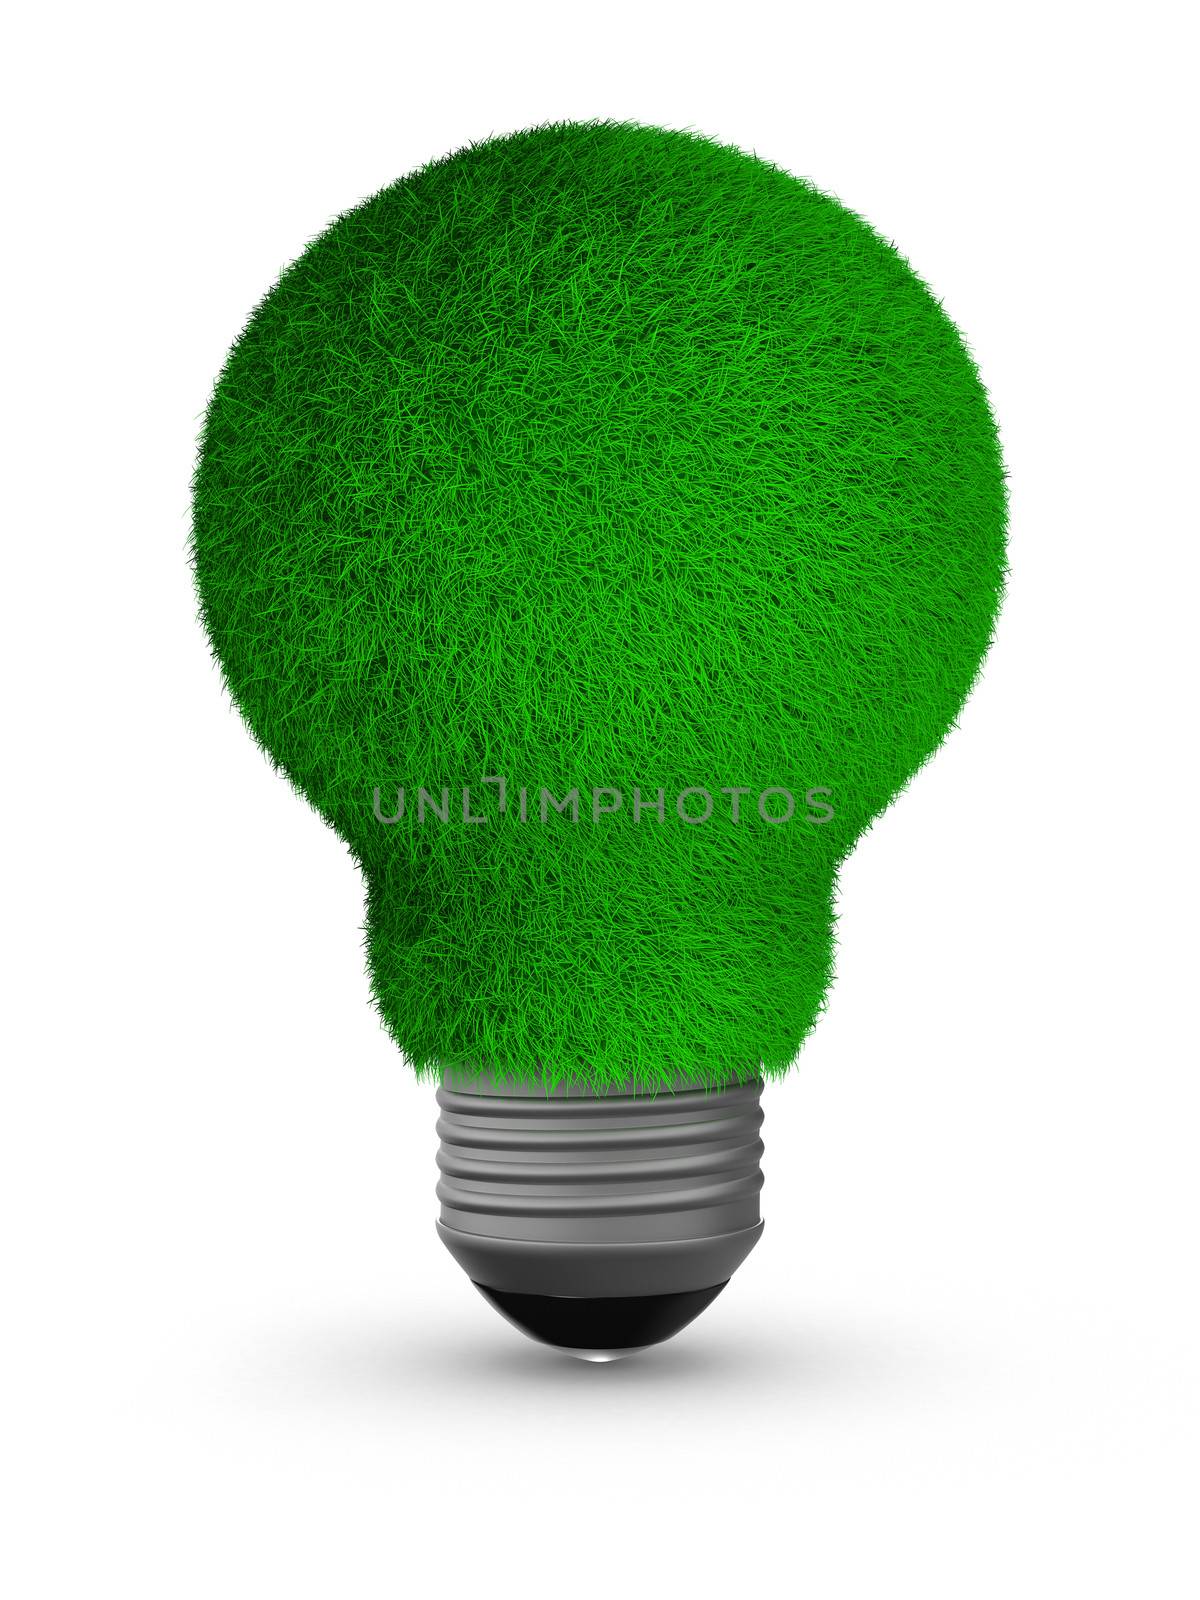 energy saving bulb on white background. Isolated 3D image